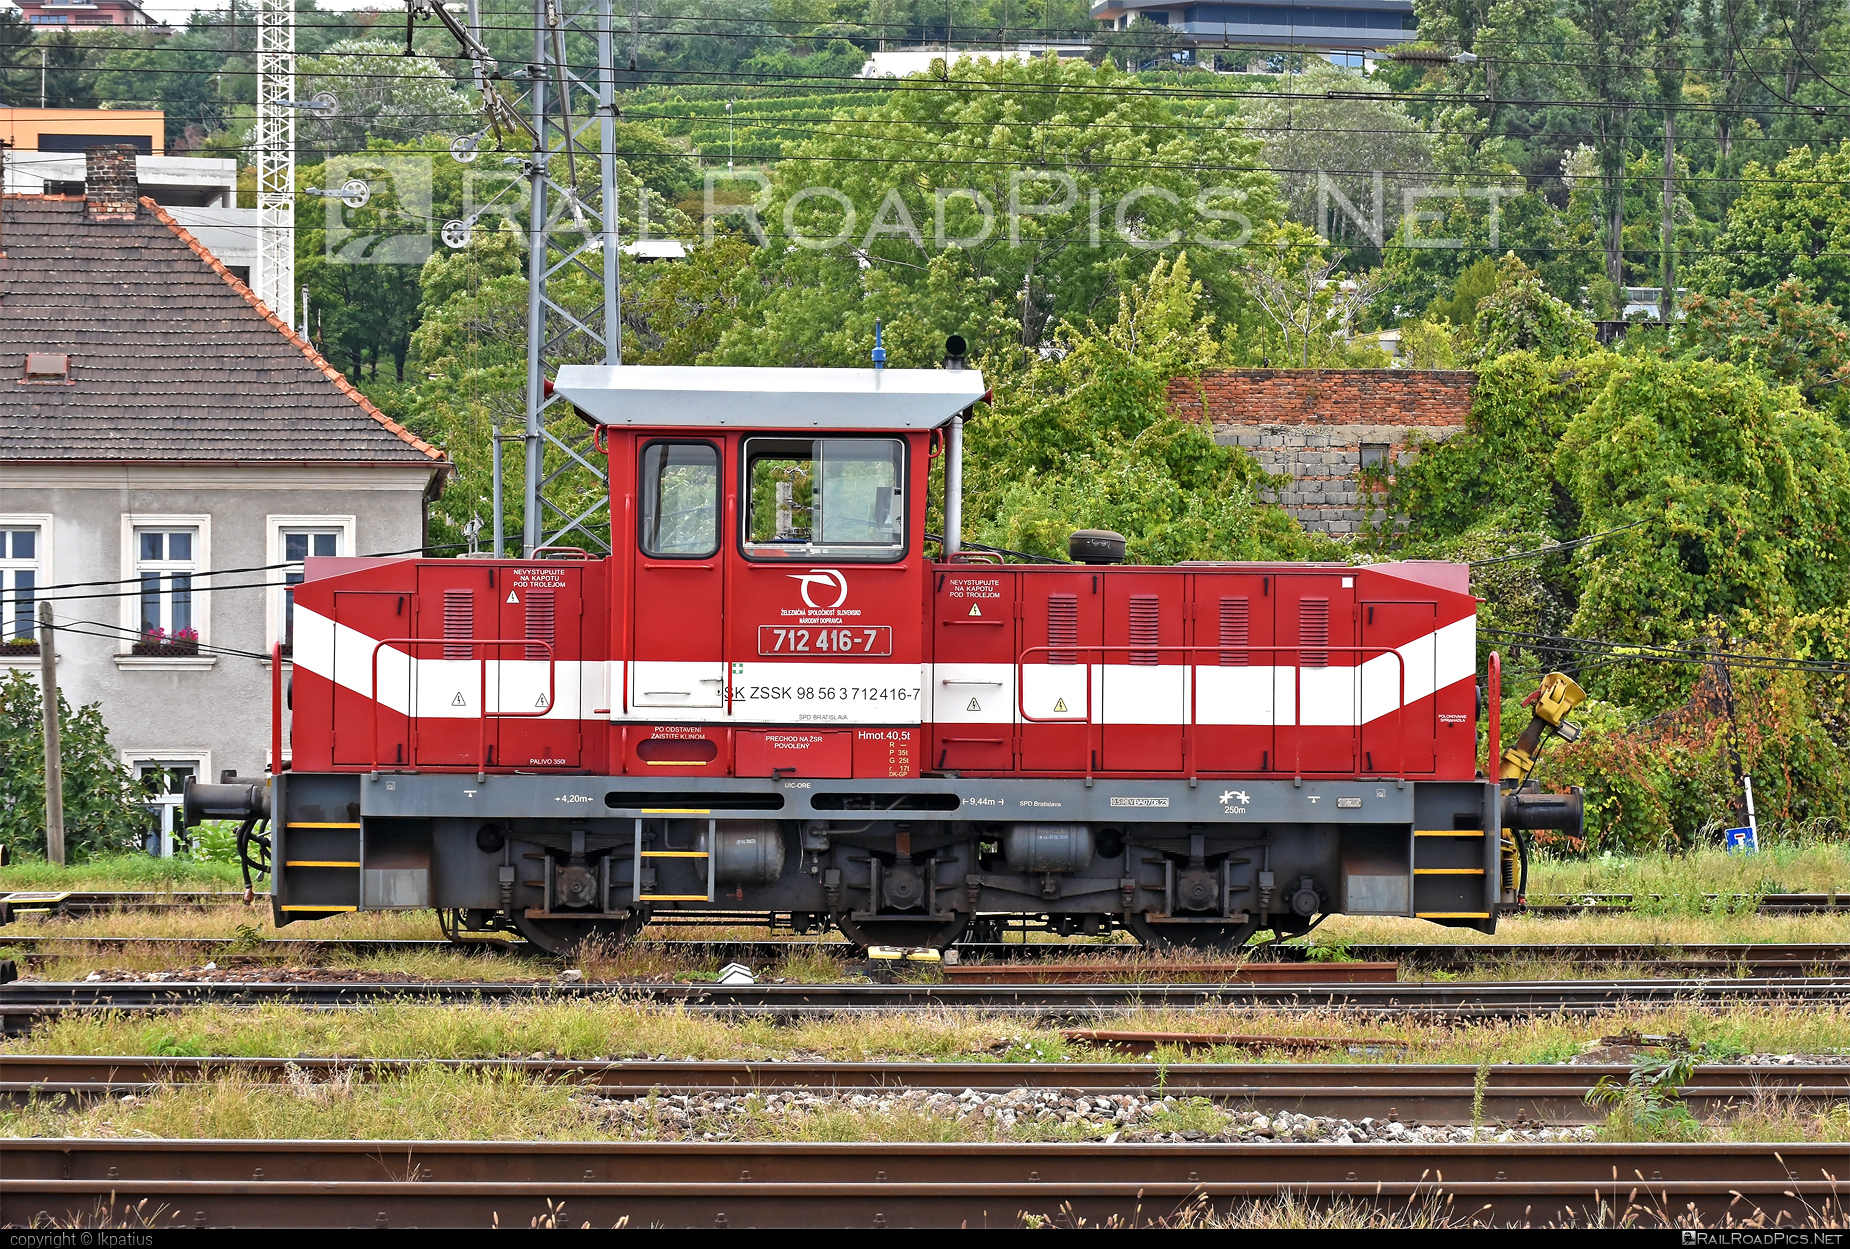 ŽOS Zvolen Class 712 - 712 416-7 operated by Železničná Spoločnost' Slovensko, a.s. #ZeleznicnaSpolocnostSlovensko #locomotive712 #zoszvolen #zoszvolen712 #zssk